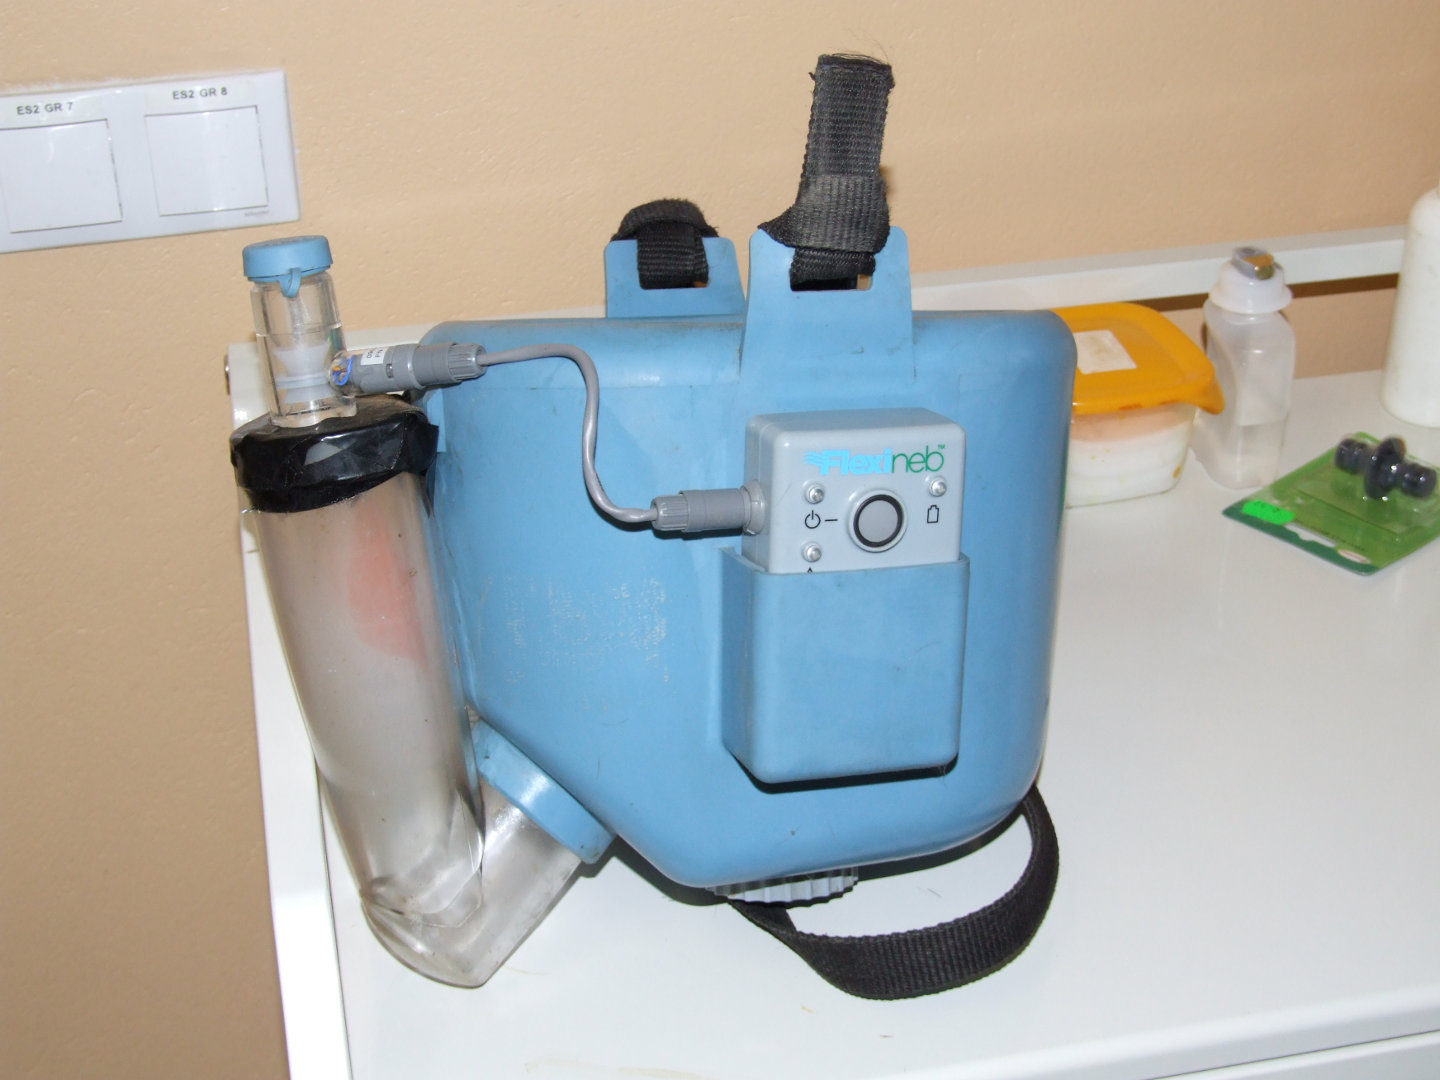 Kit for nebulization